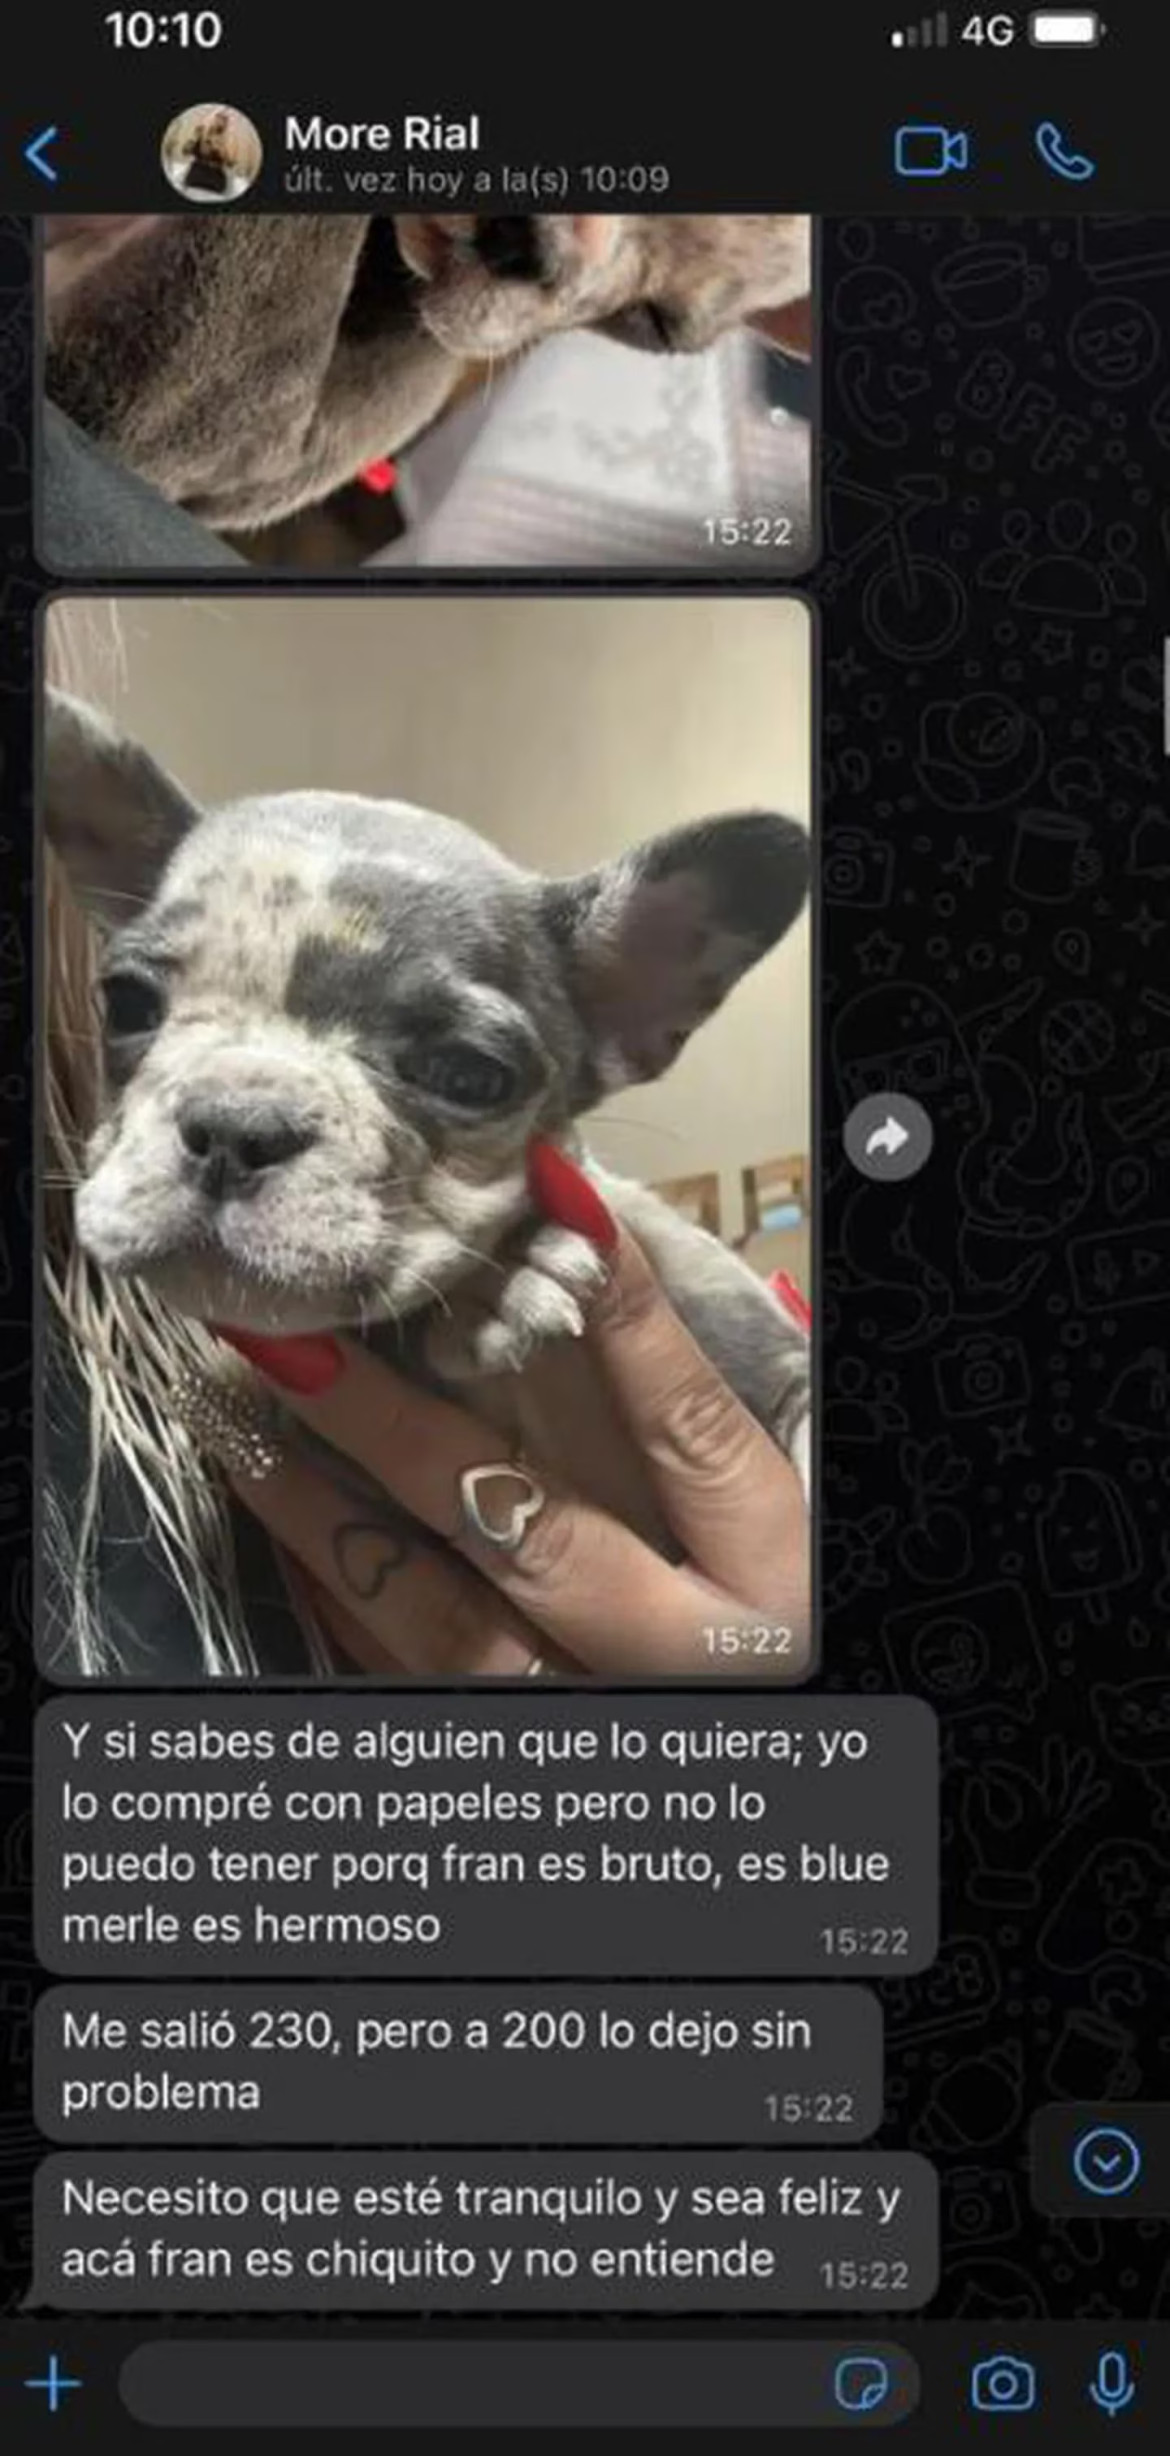 More Rial intentó vender a su perro. Foto: redes sociales.